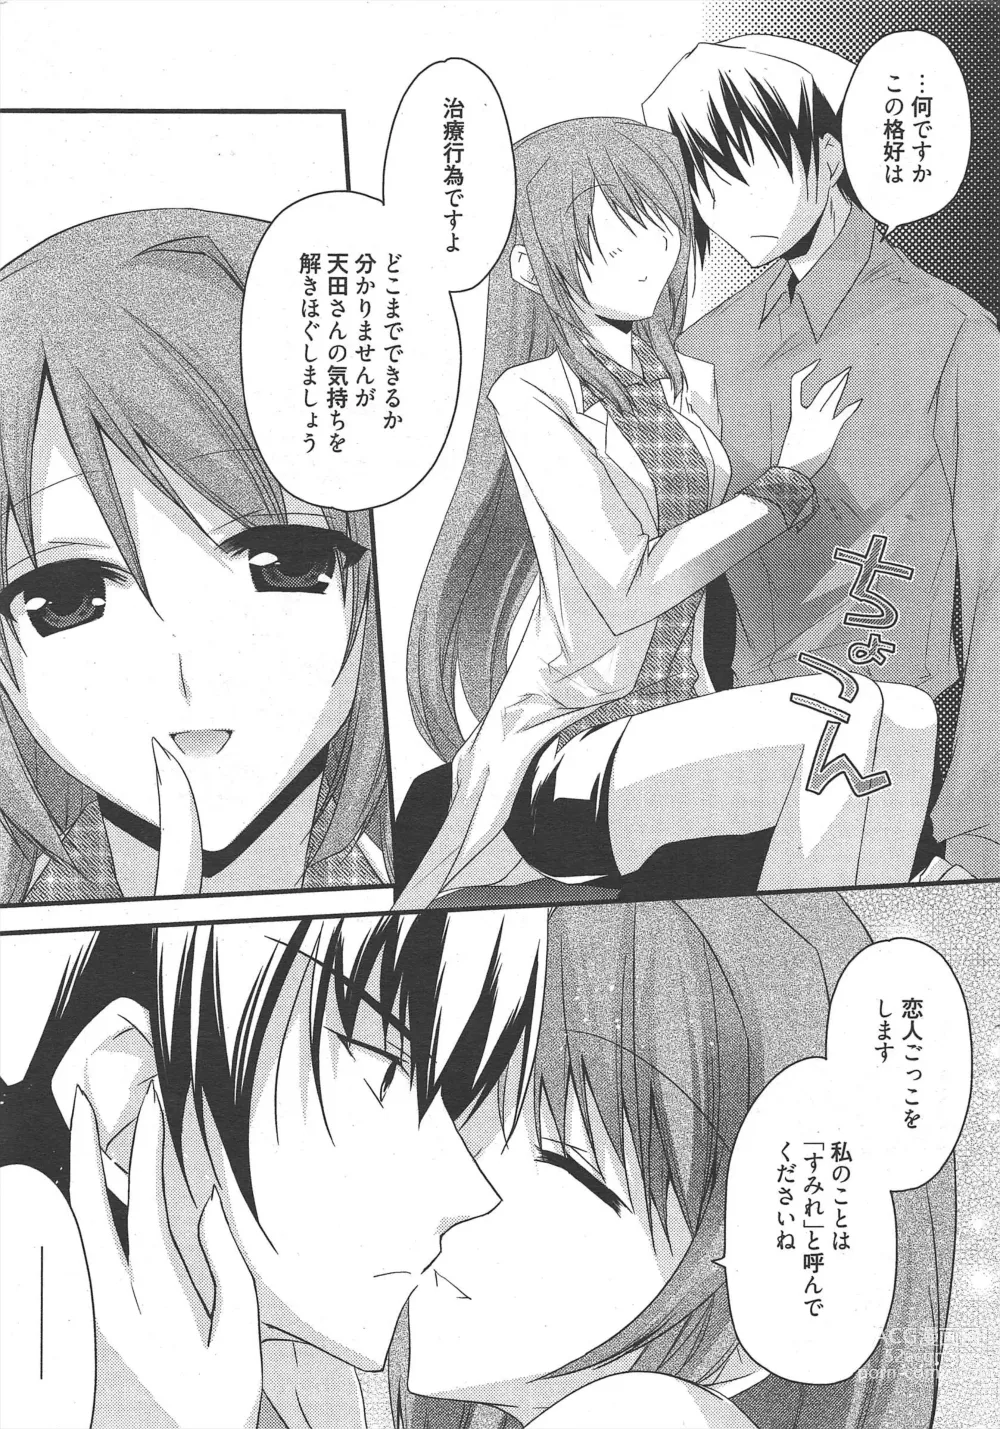 Page 12 of manga Manga Bangaichi 2011-06